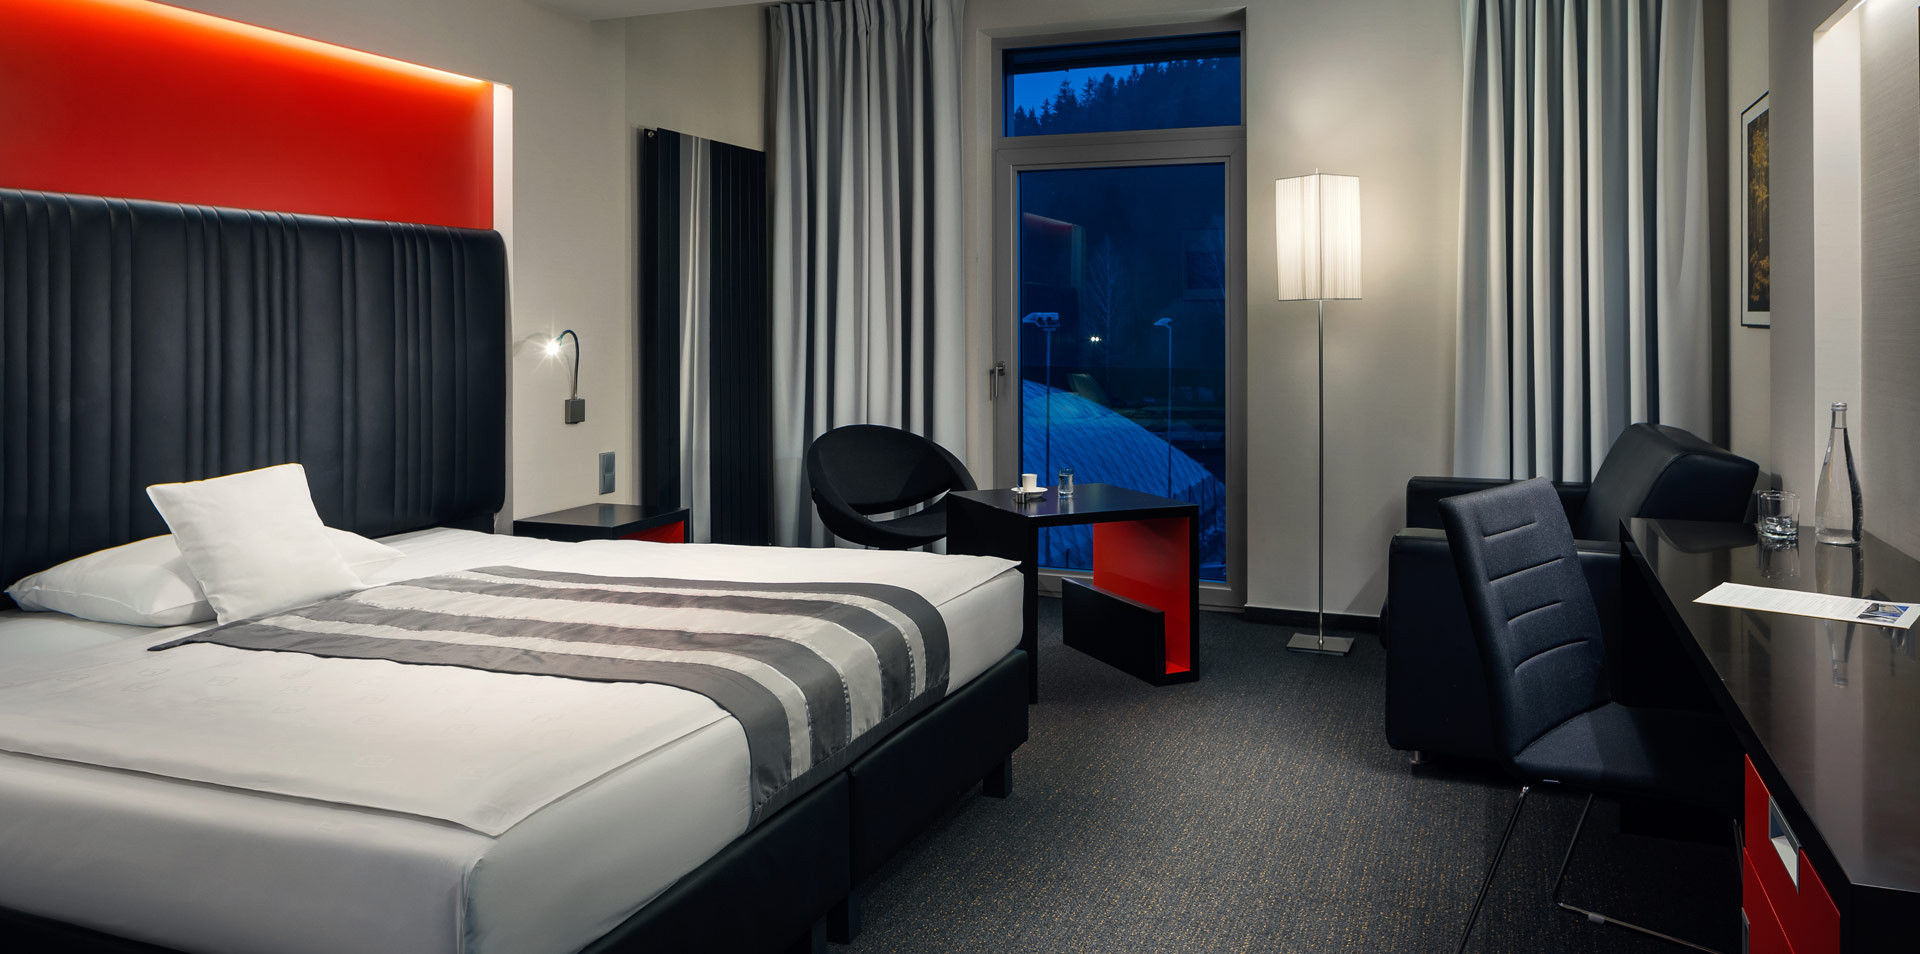 HOTEL DAVÍDEK|Prostorné pokoje a nadčasový design|rychlé wi-fi 50/50 Mbps